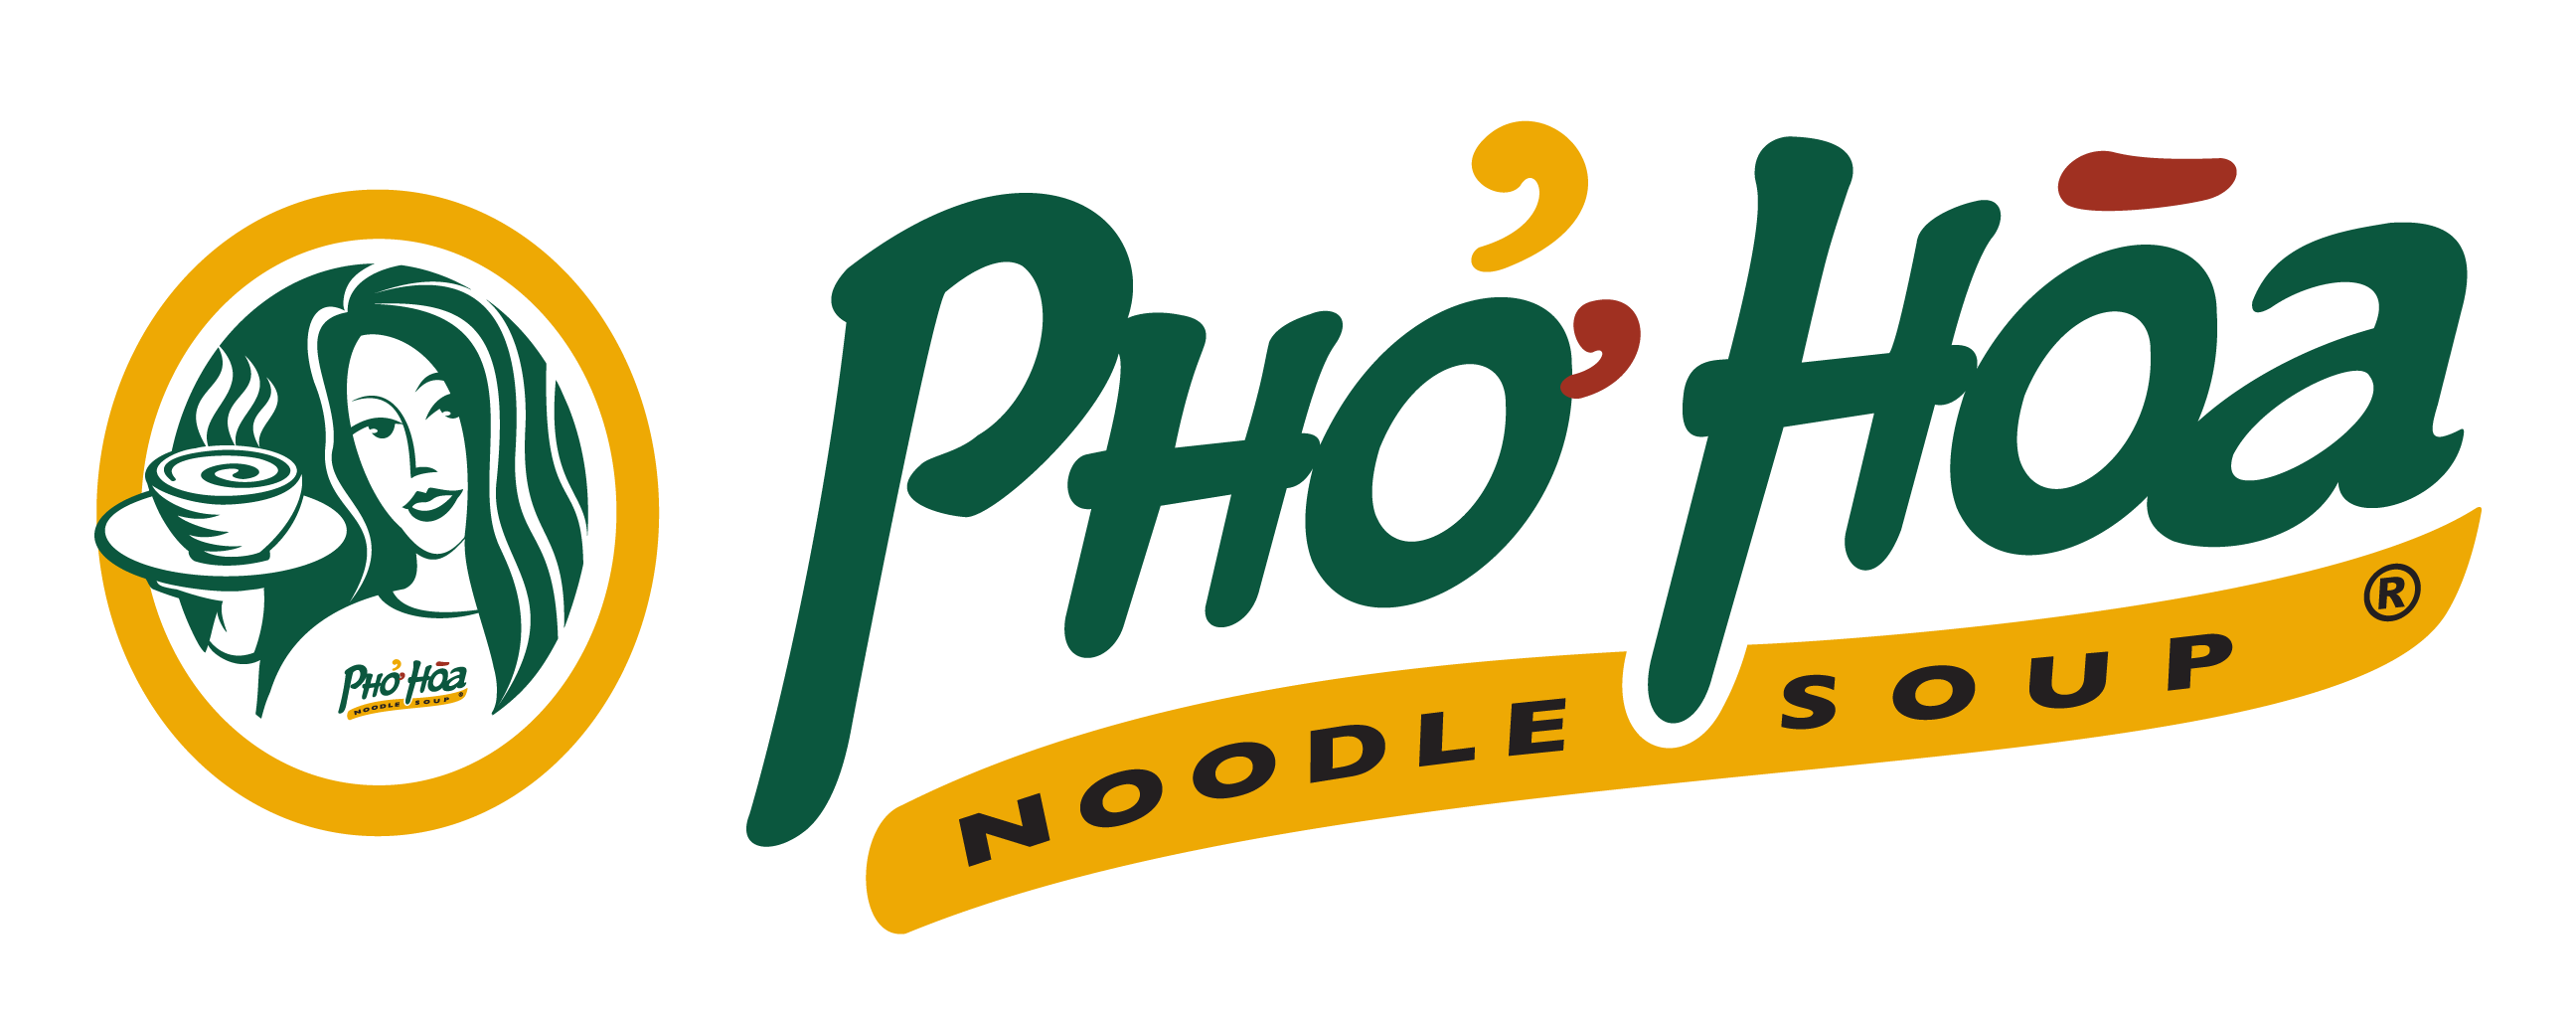 Pho Logo - Pho Hoa Noodle Soup